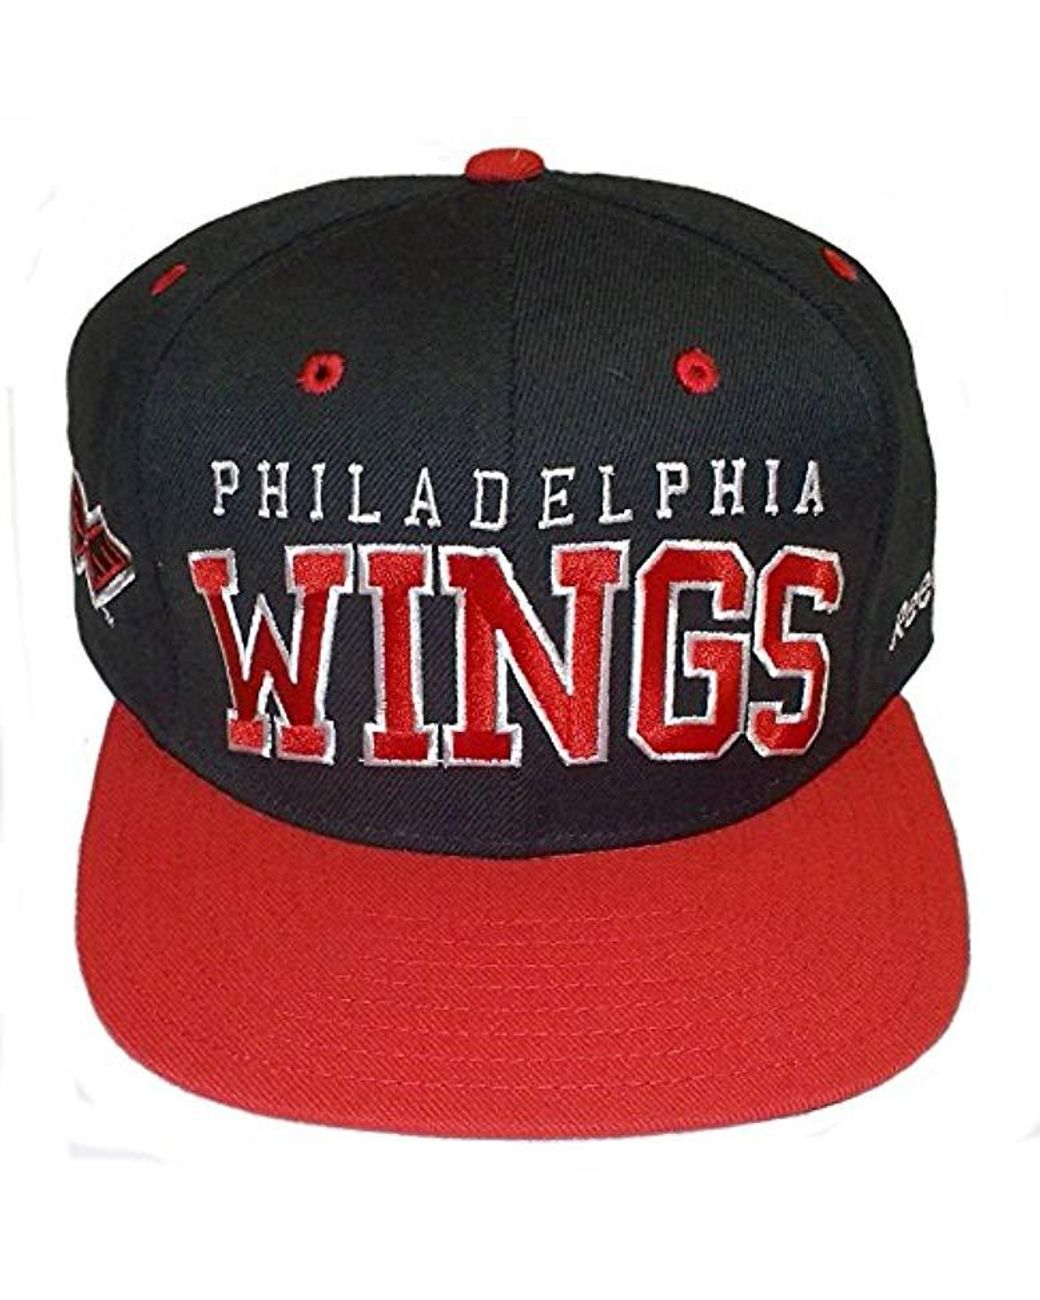 philadelphia wings hat